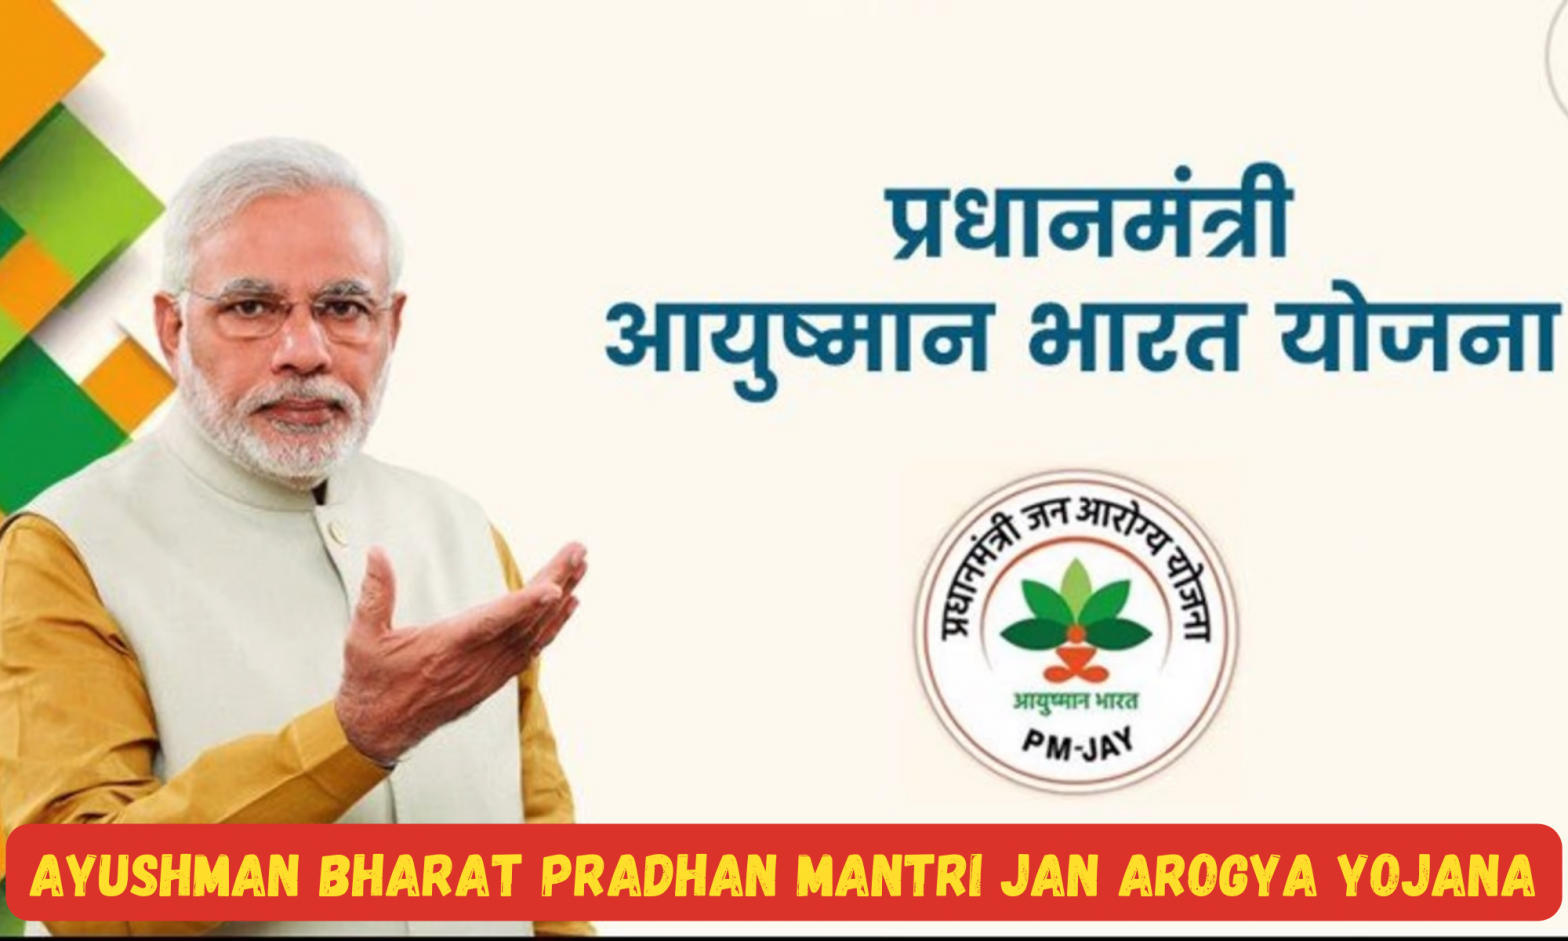 Ayushman Bharat Pradhan Mantri Jan Arogya Yojana: